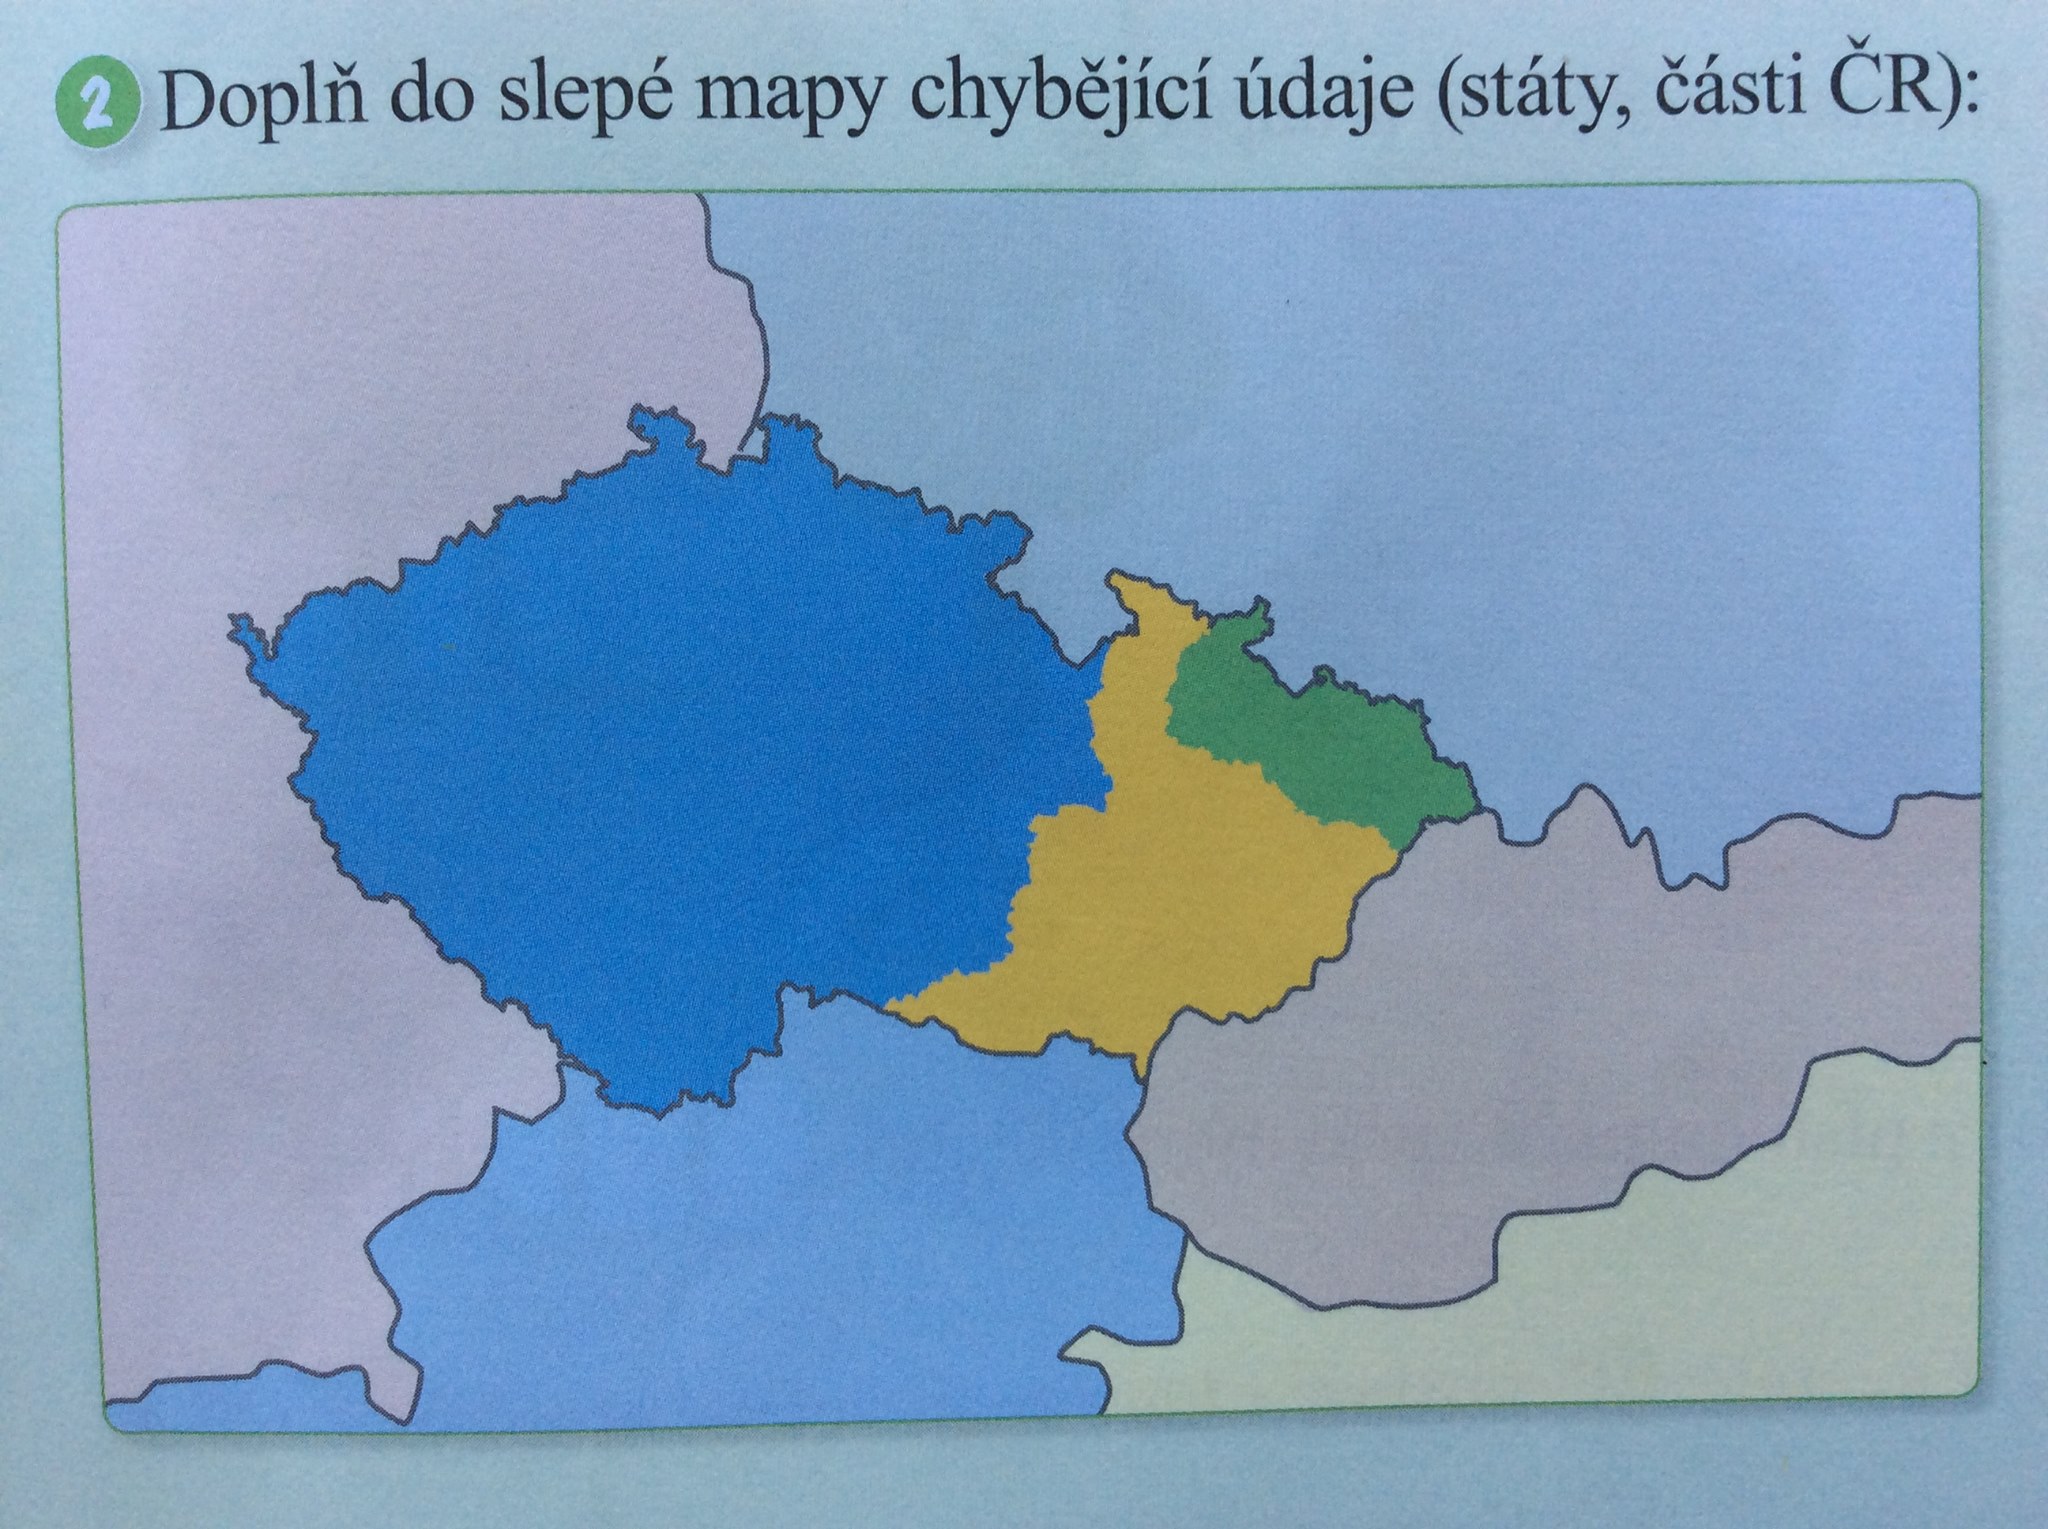 Slepá mapa - Čechy, Morava, Slezsko - původní chybná verze